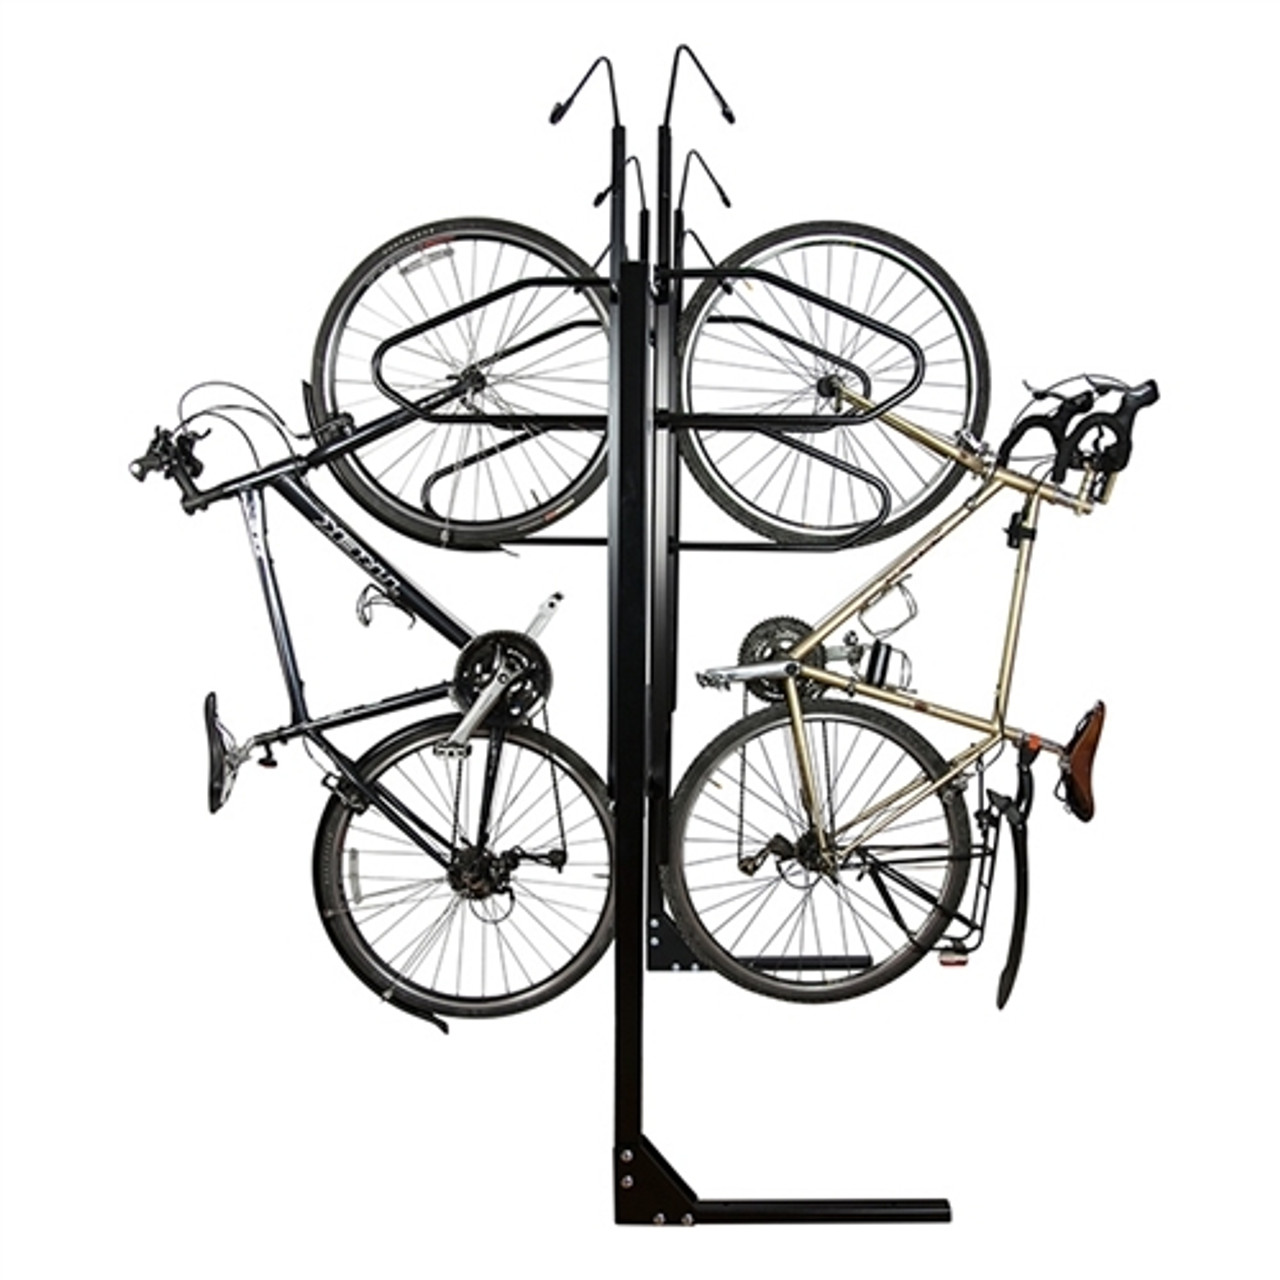 8 Bike double sided non locking bike rack